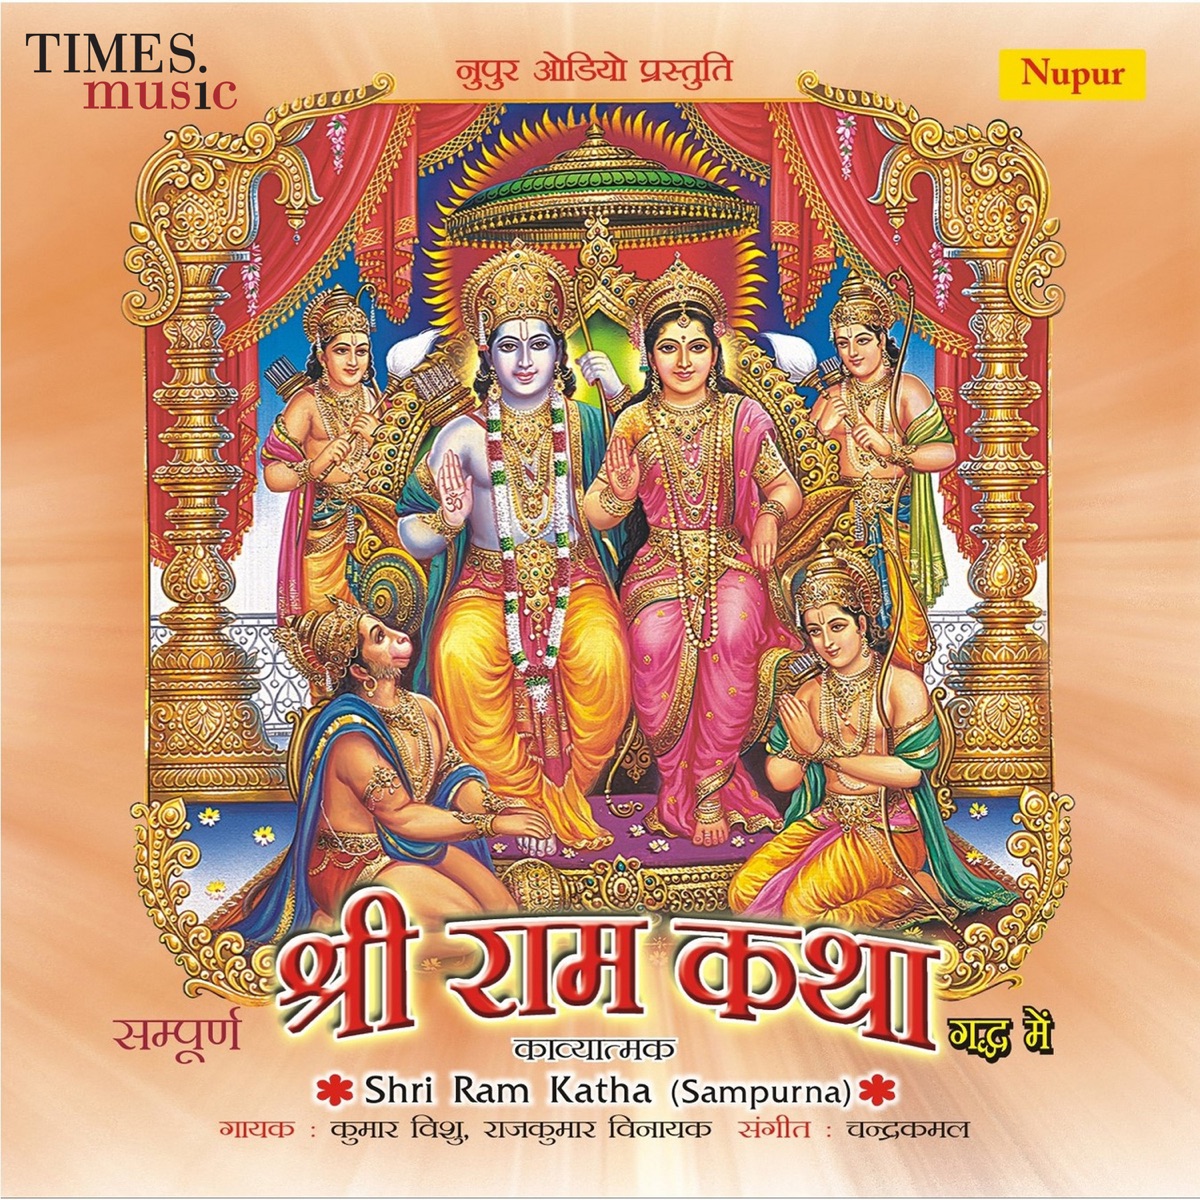 Shri Ram Katha by Kumar Vishu & Rajkumar Vinayak on Apple Music